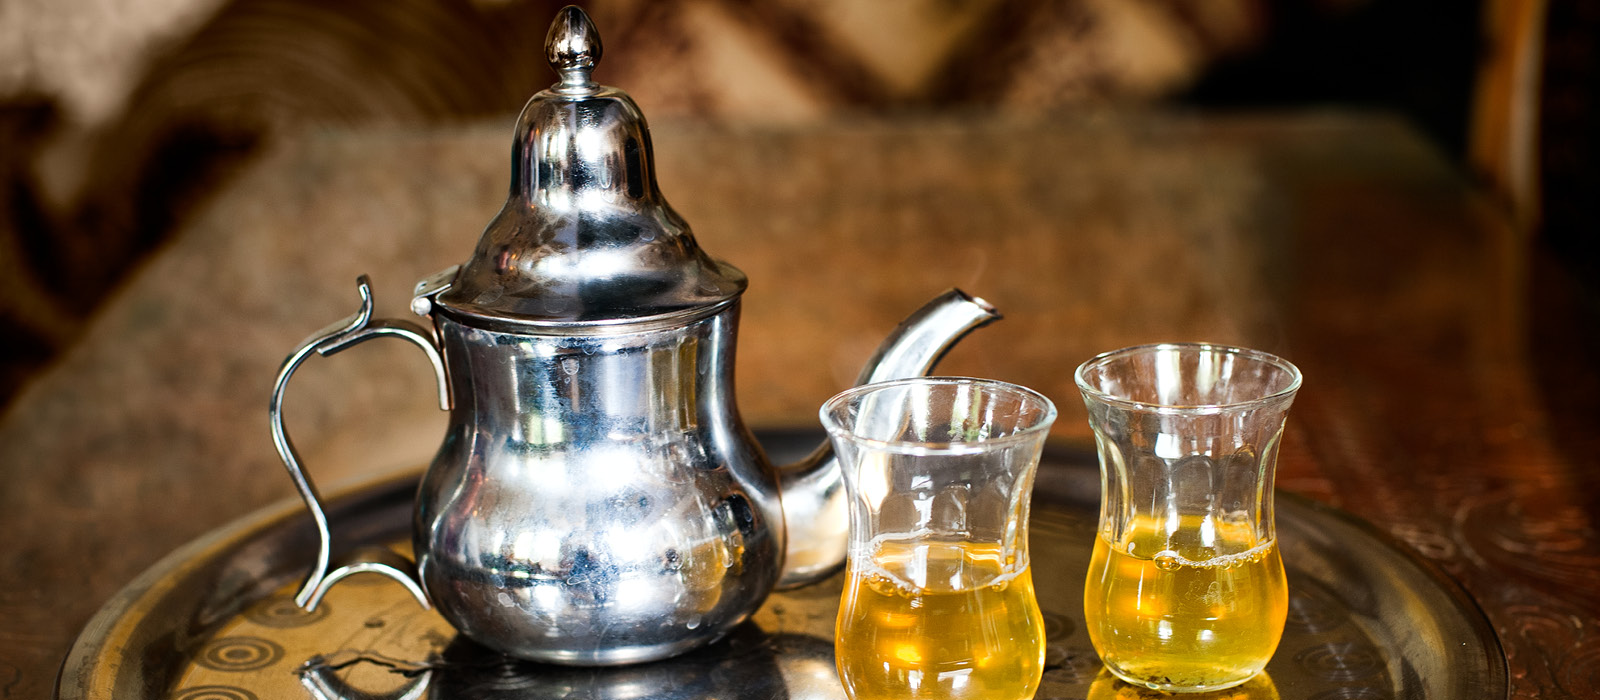 Ricette “Fai da tè”: Tè alla Menta in ricetta originale